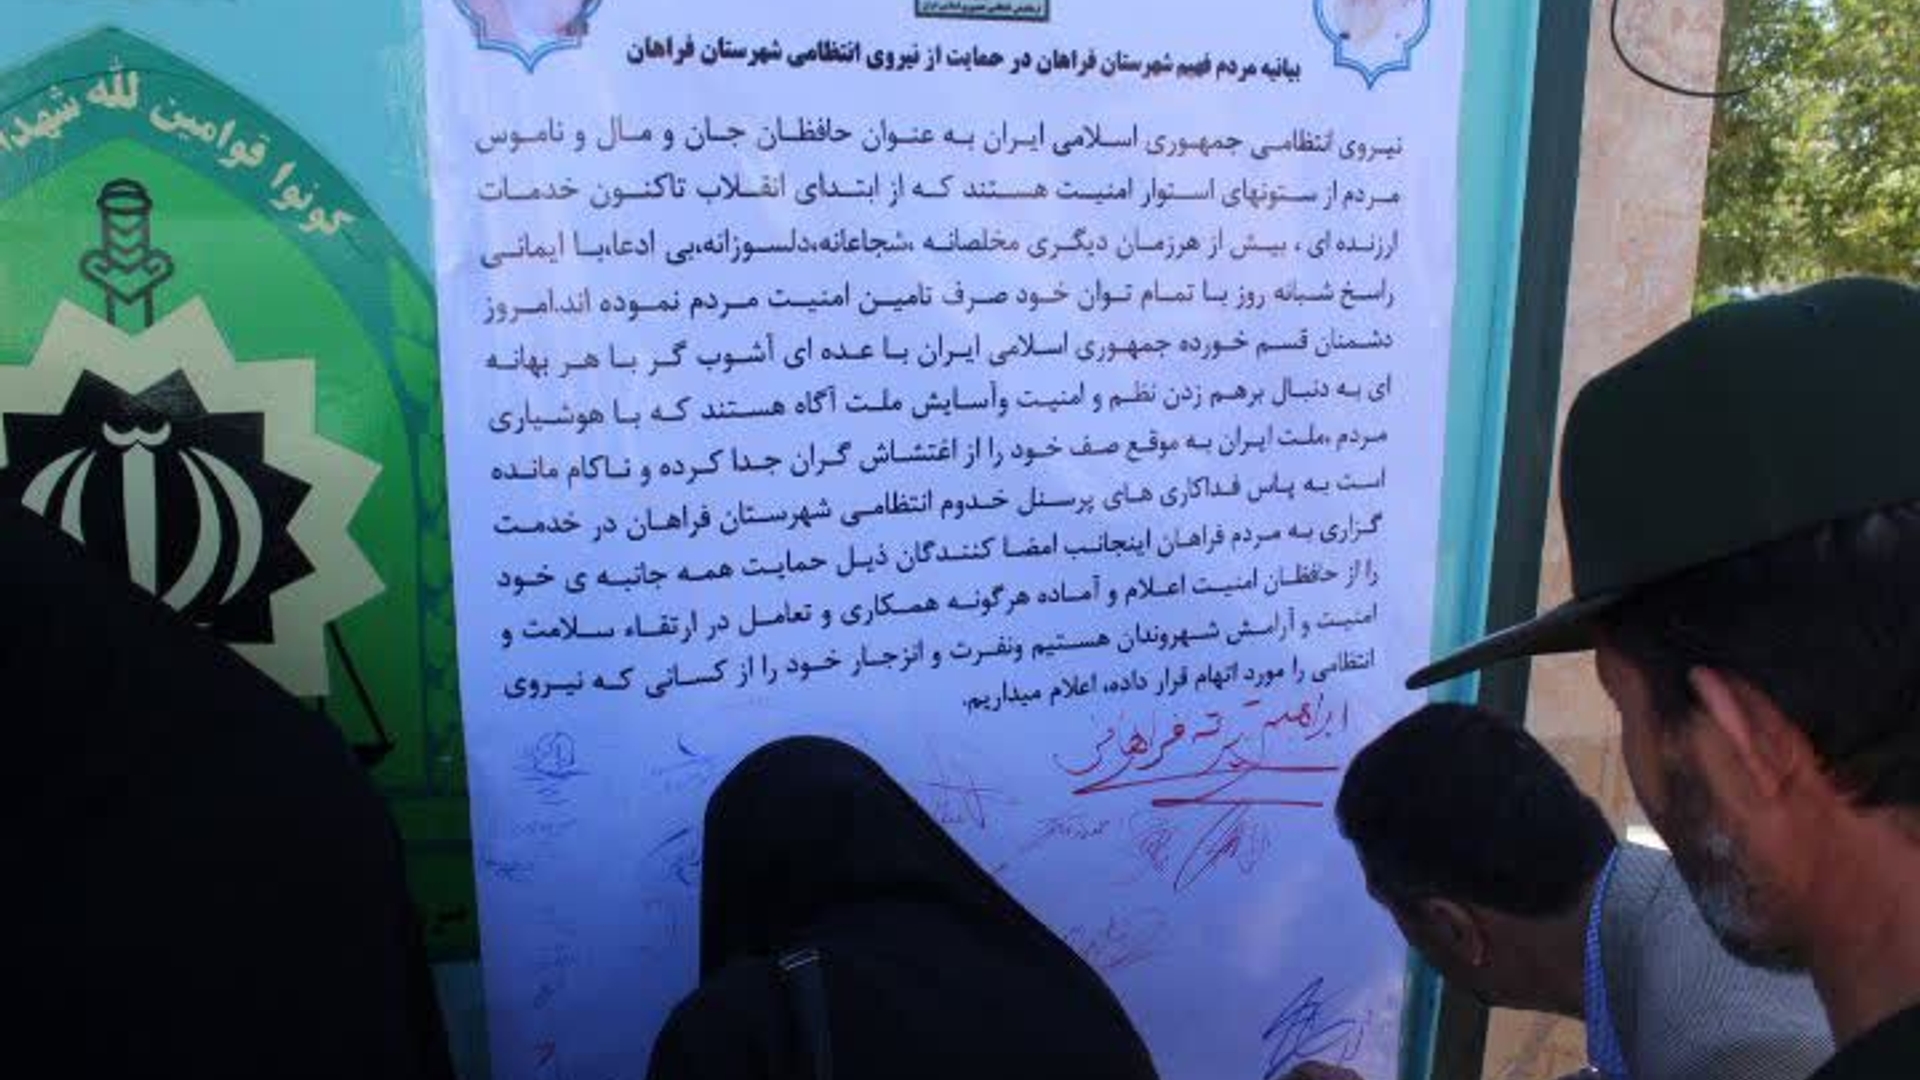 🇮🇷بیانیه مردم فراهان در حمایت از نیروی انتظامی

🗓️۲۰ مهر۱۴۰۱